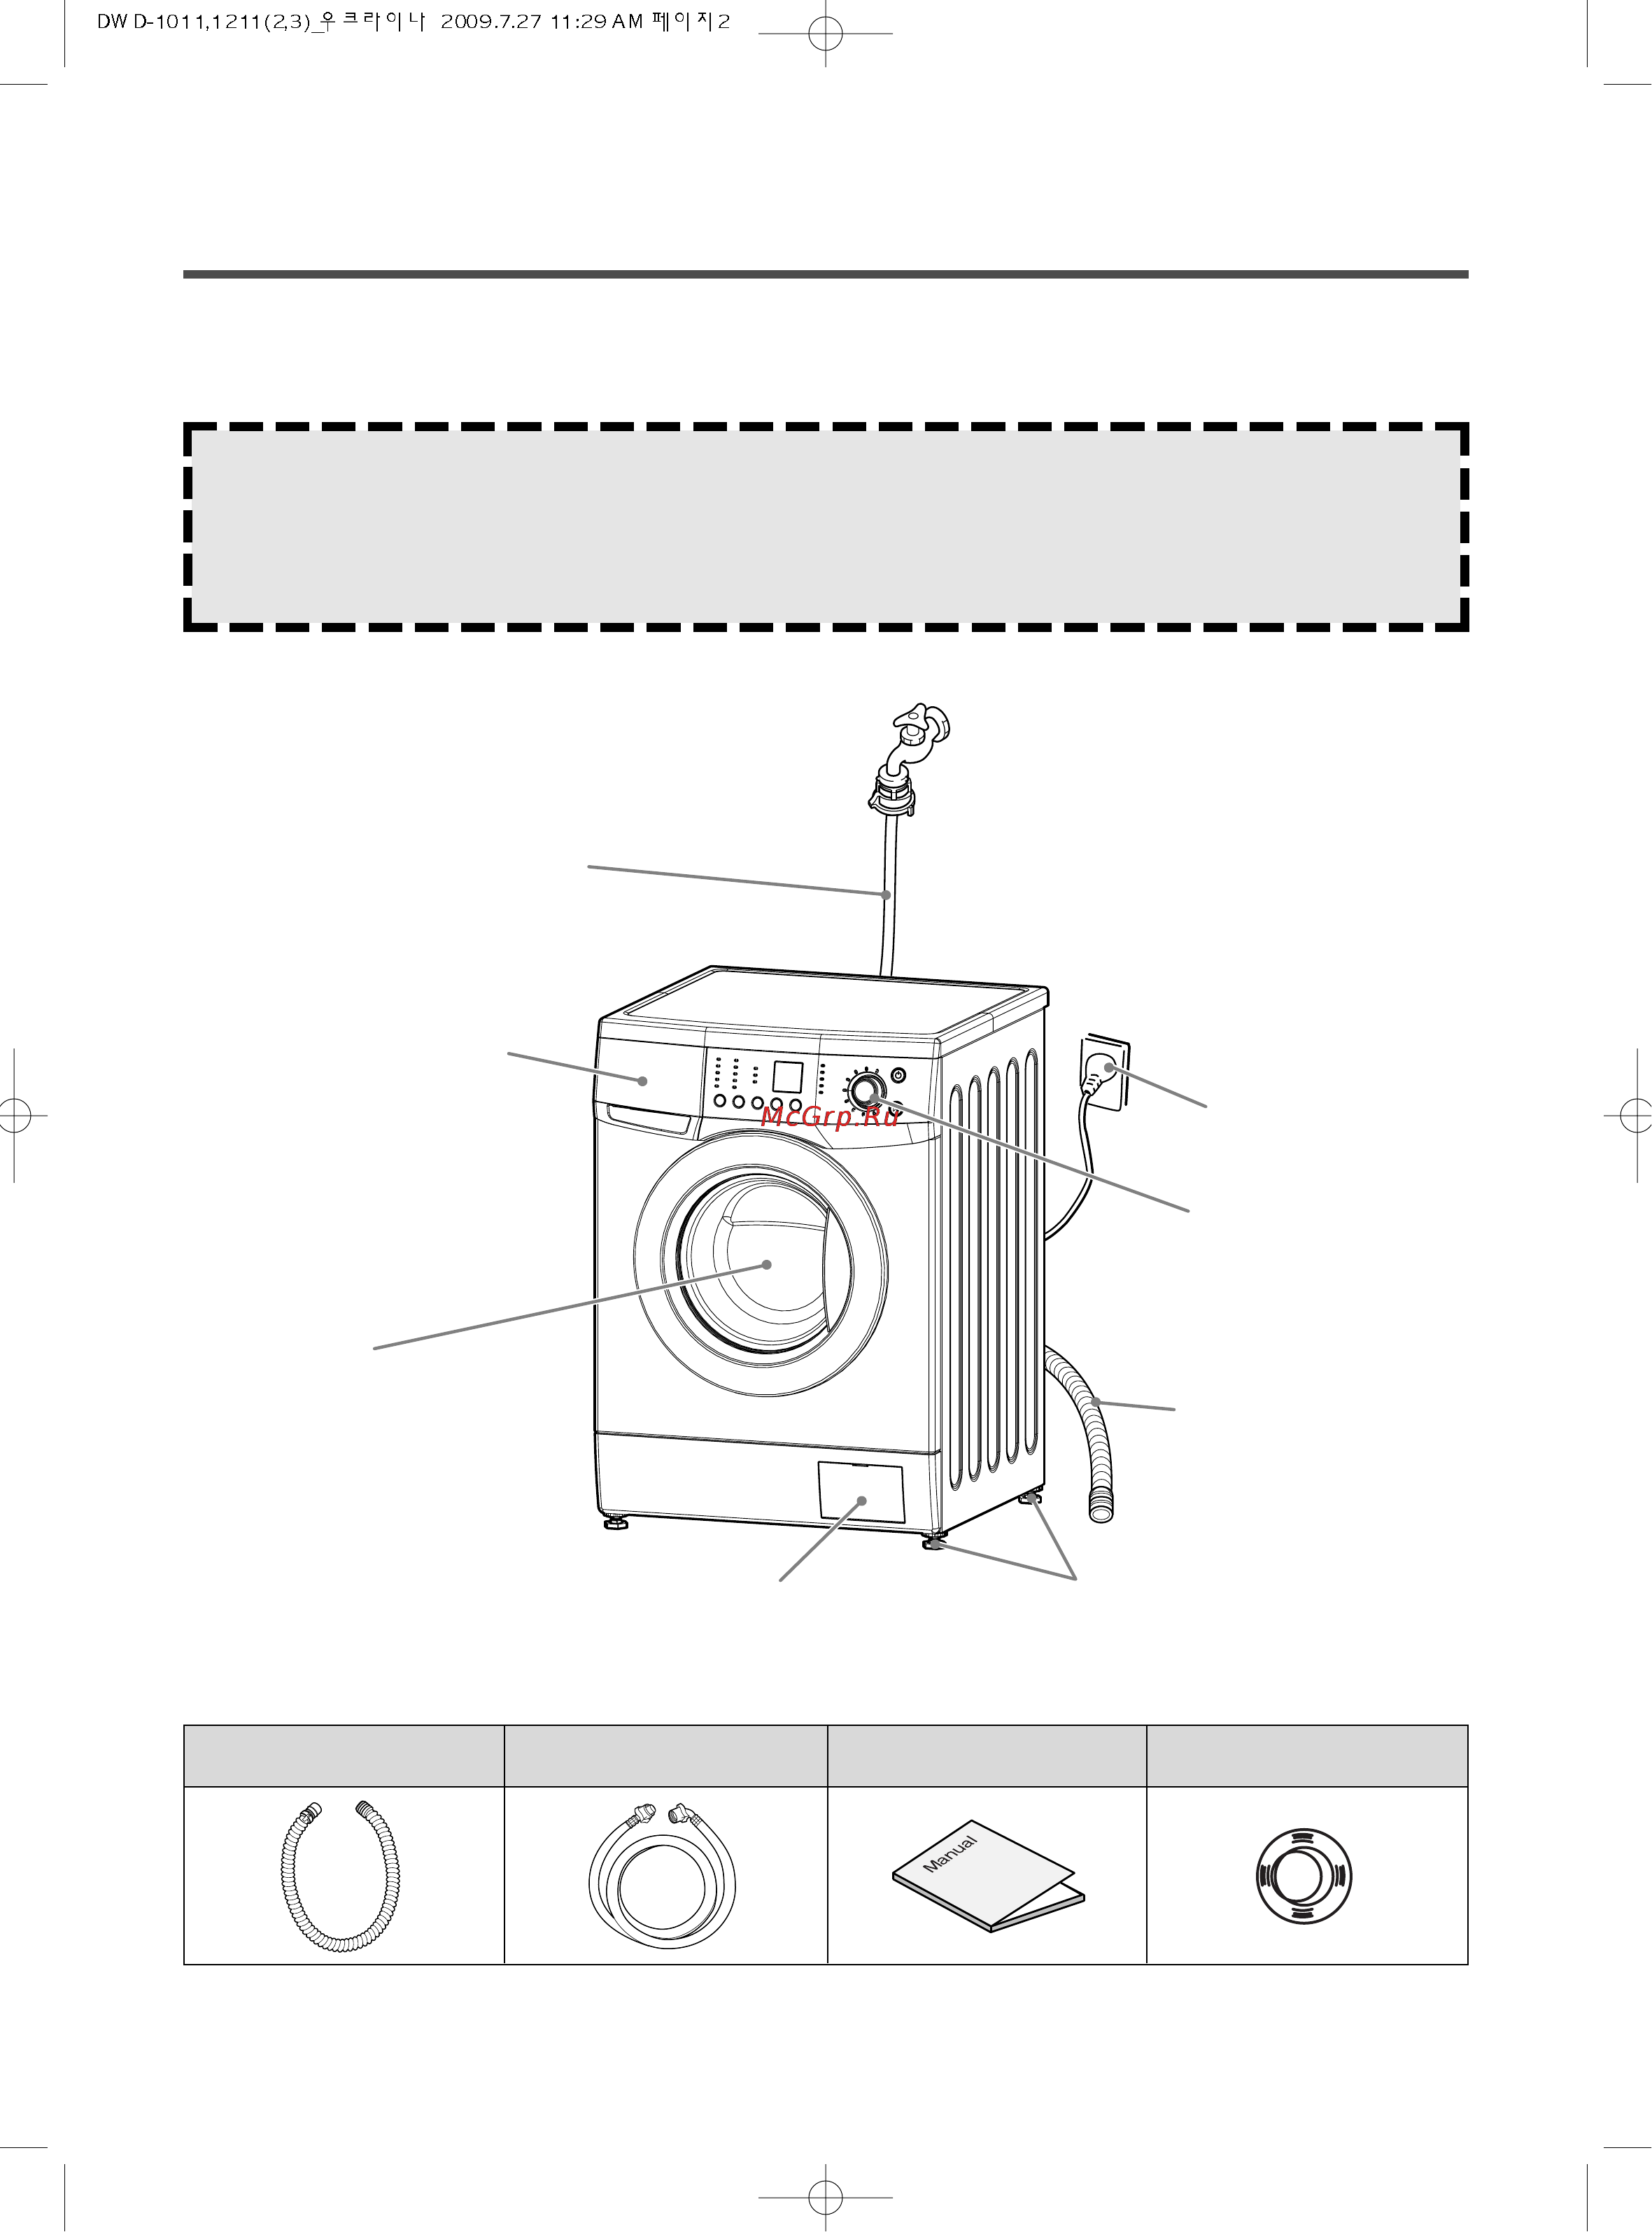 Стиральная машина daewoo – инструкции по применению